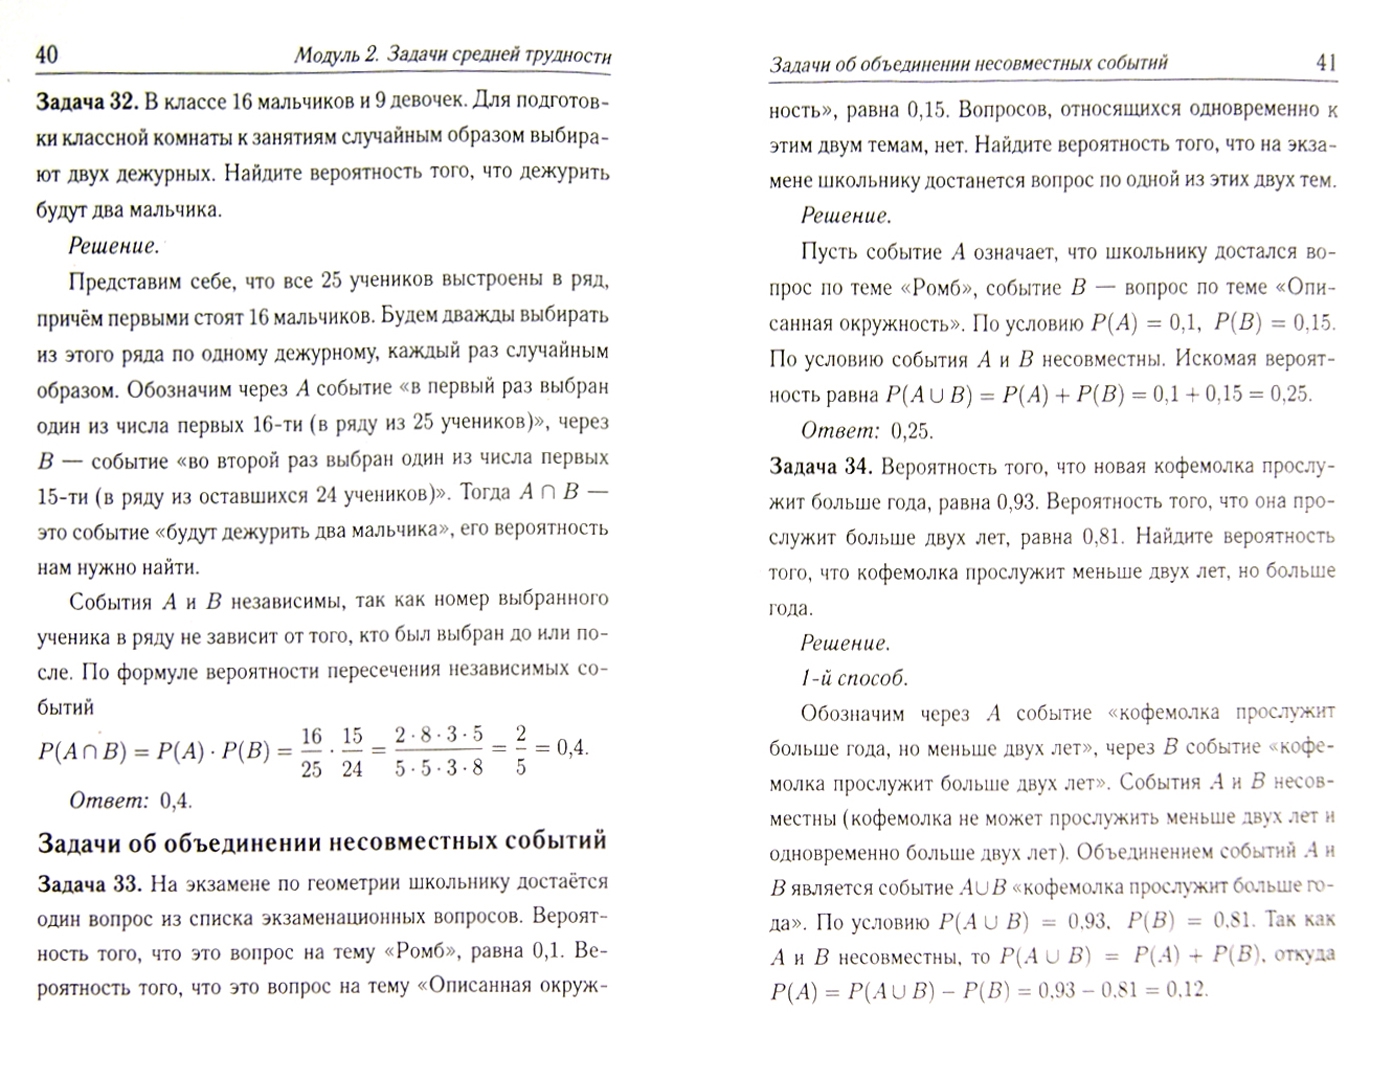 Иллюстрация 1 из 5 для Математика. Подготовка к ЕГЭ-2015. Теория вероятностей - Коннова, Иванов, Ханин | Лабиринт - книги. Источник: Лабиринт